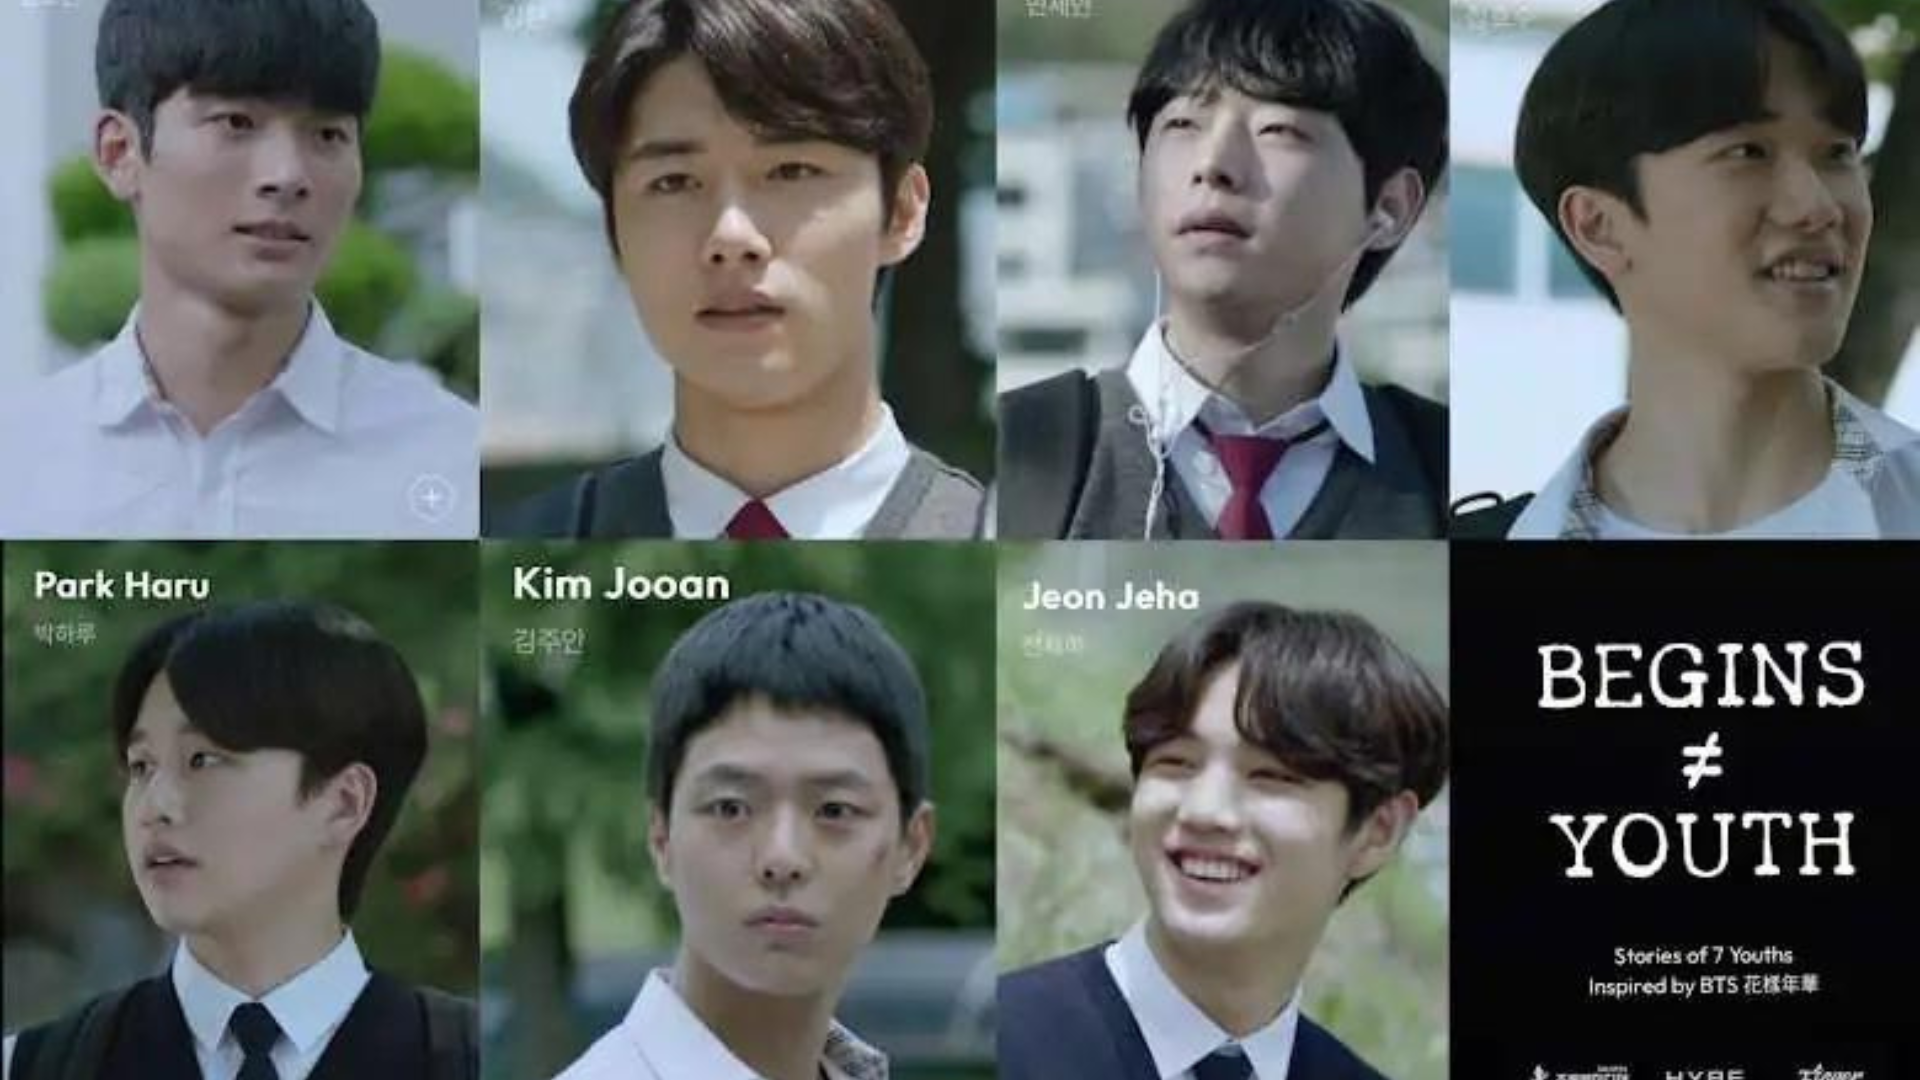 Begins Youth: Drama Korea yang Menyentuh Hati Tentang Persahabatan dan Ketahanan Remaja